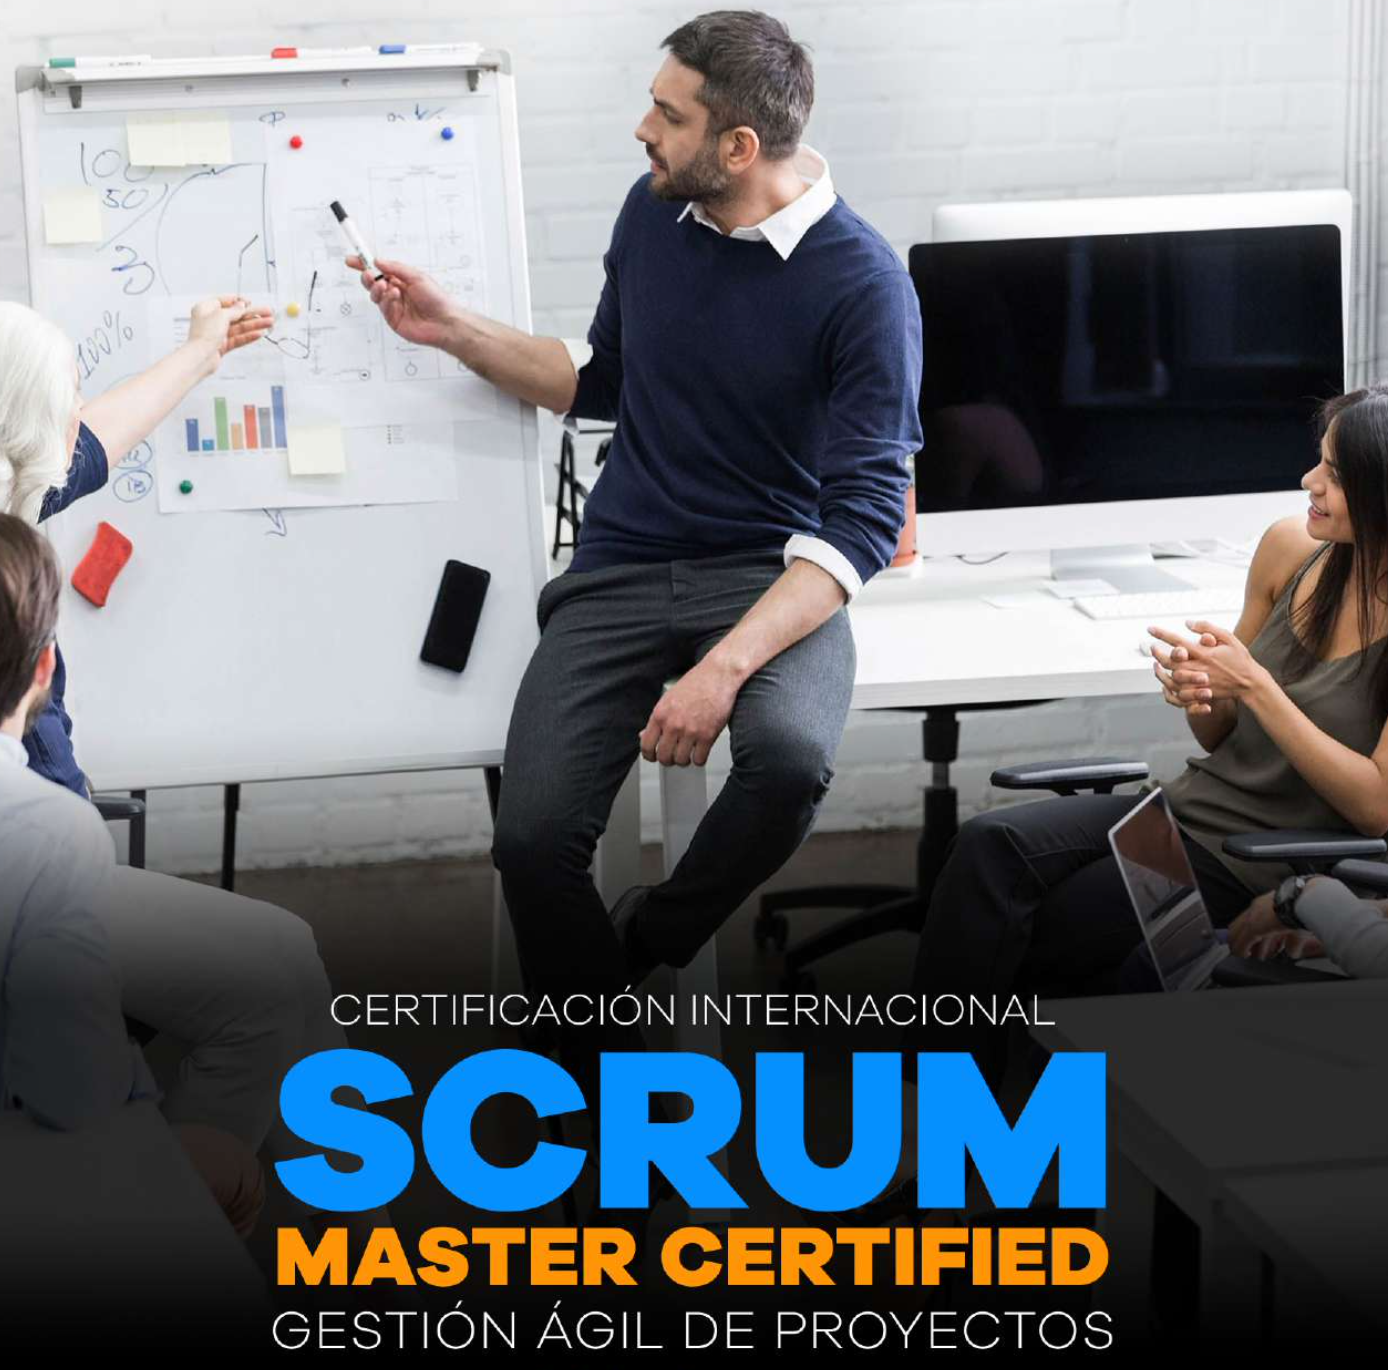 Certificación Profesional SCRUM Master Certified: Gestión Ágil de Proyectos